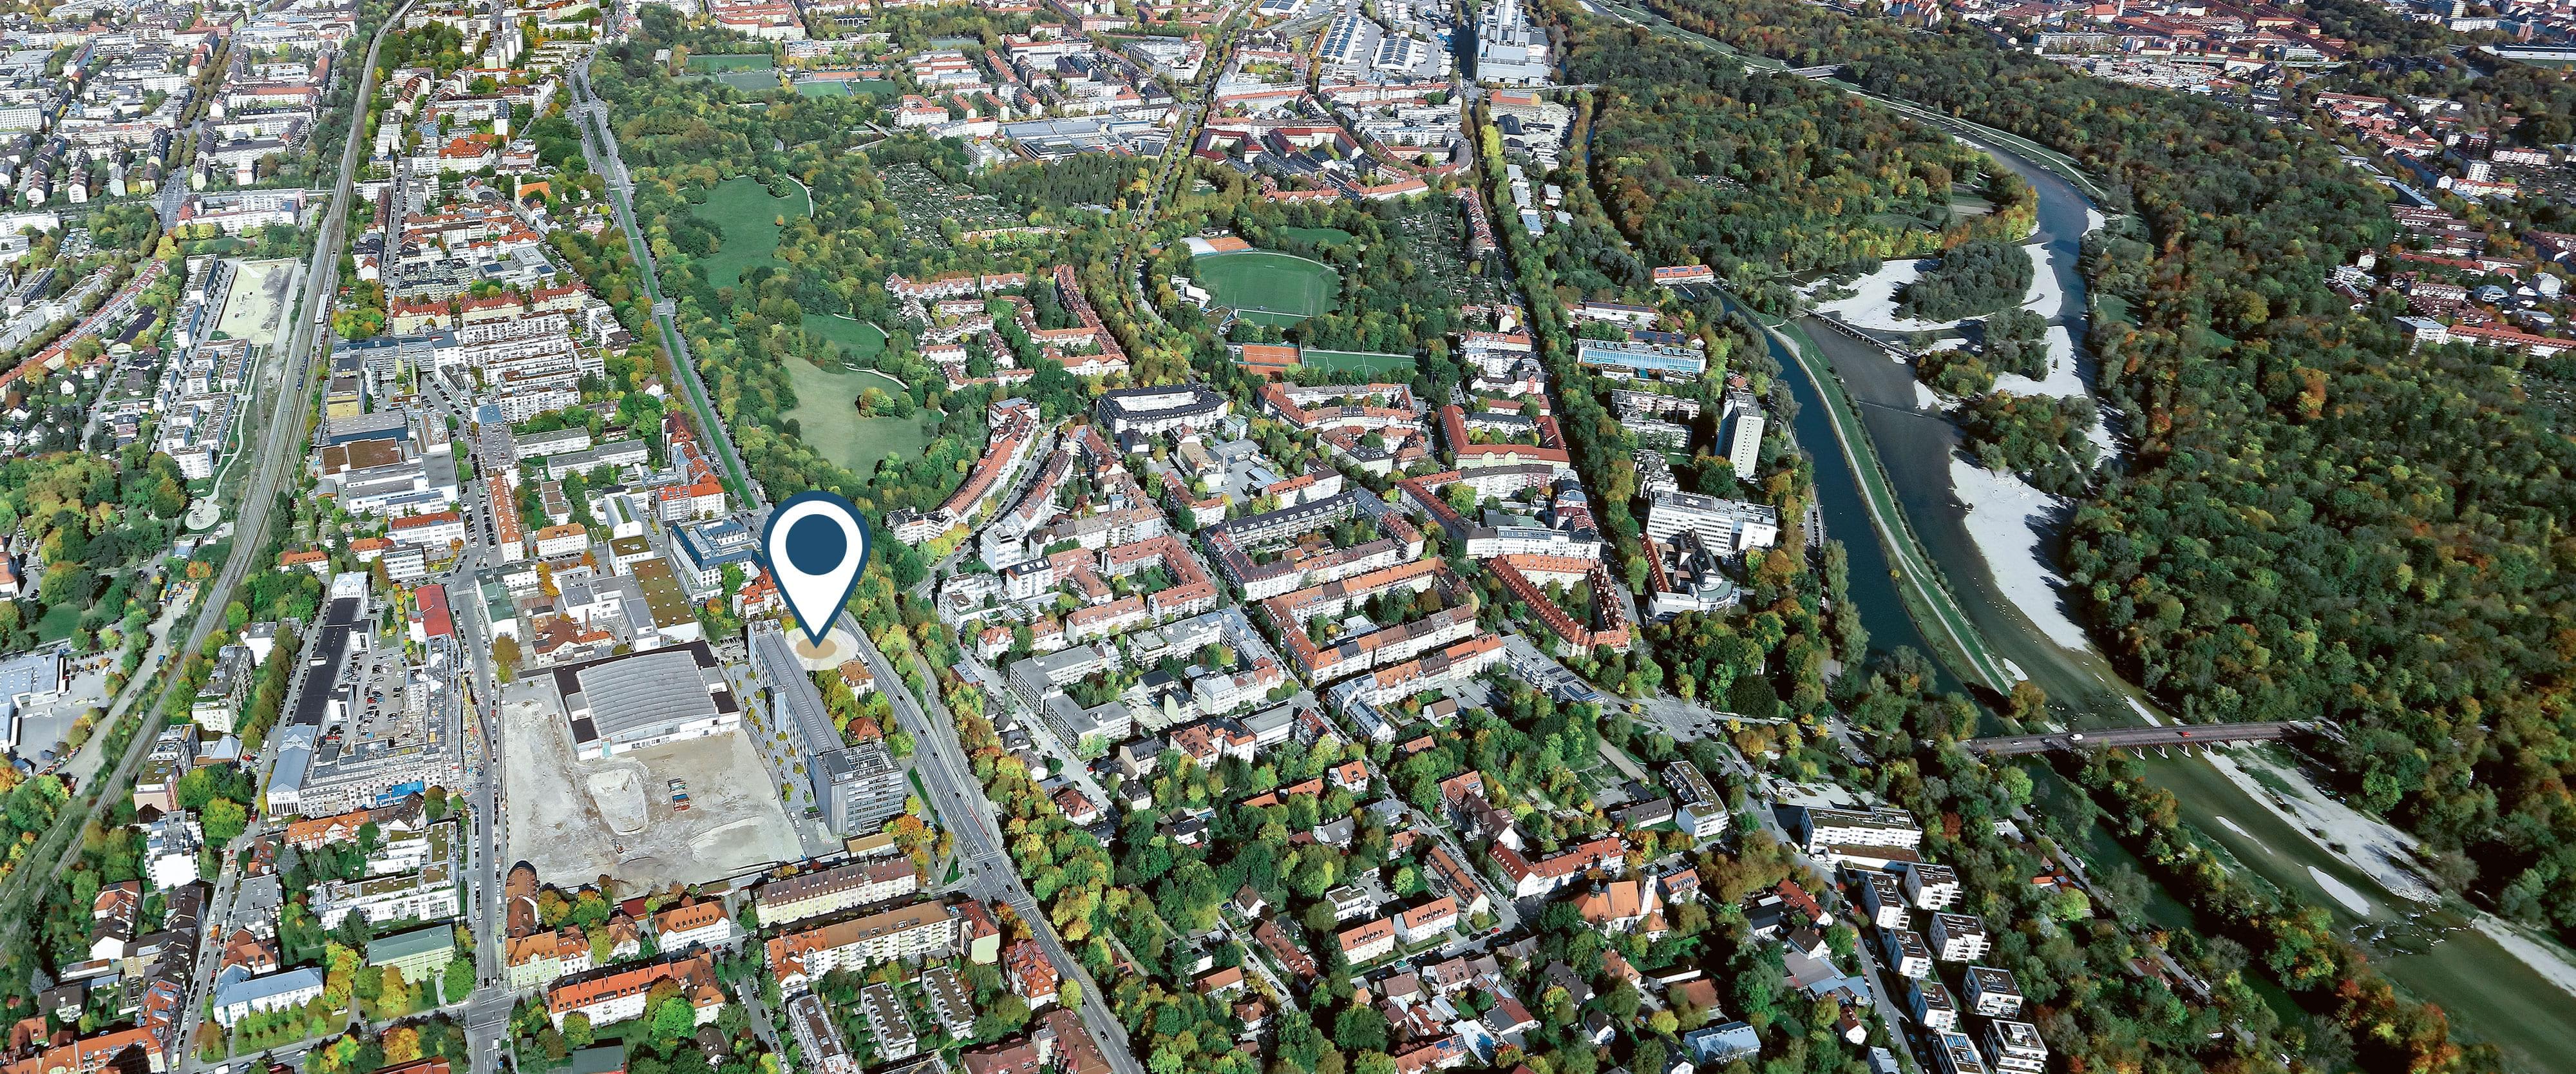 Luftaufnahme von Obersendling aus Süden, Richtung Norden blickend mit dem Standort von Plinganser134 und Sendlinger Park im Zentrum, Isar und Flaucher im Osten.